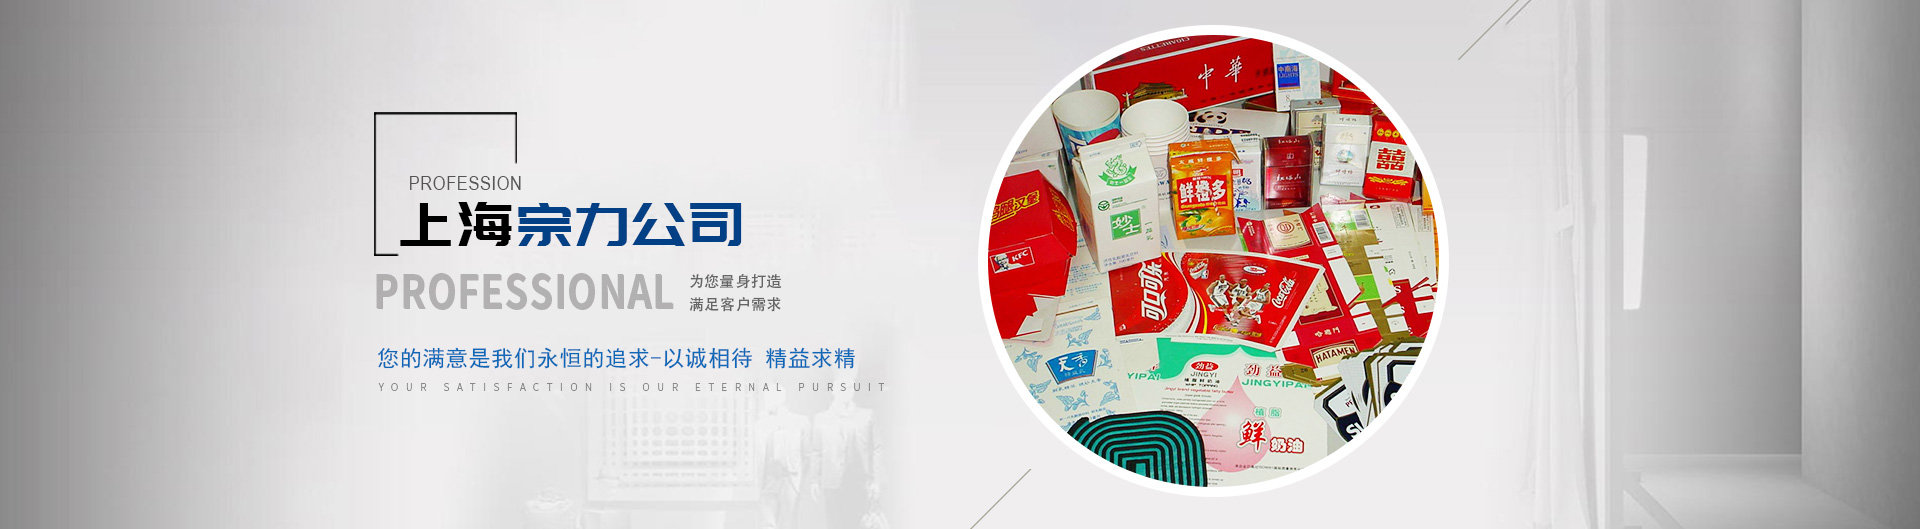 上海爱游戏app
印刷包装机械有限公司